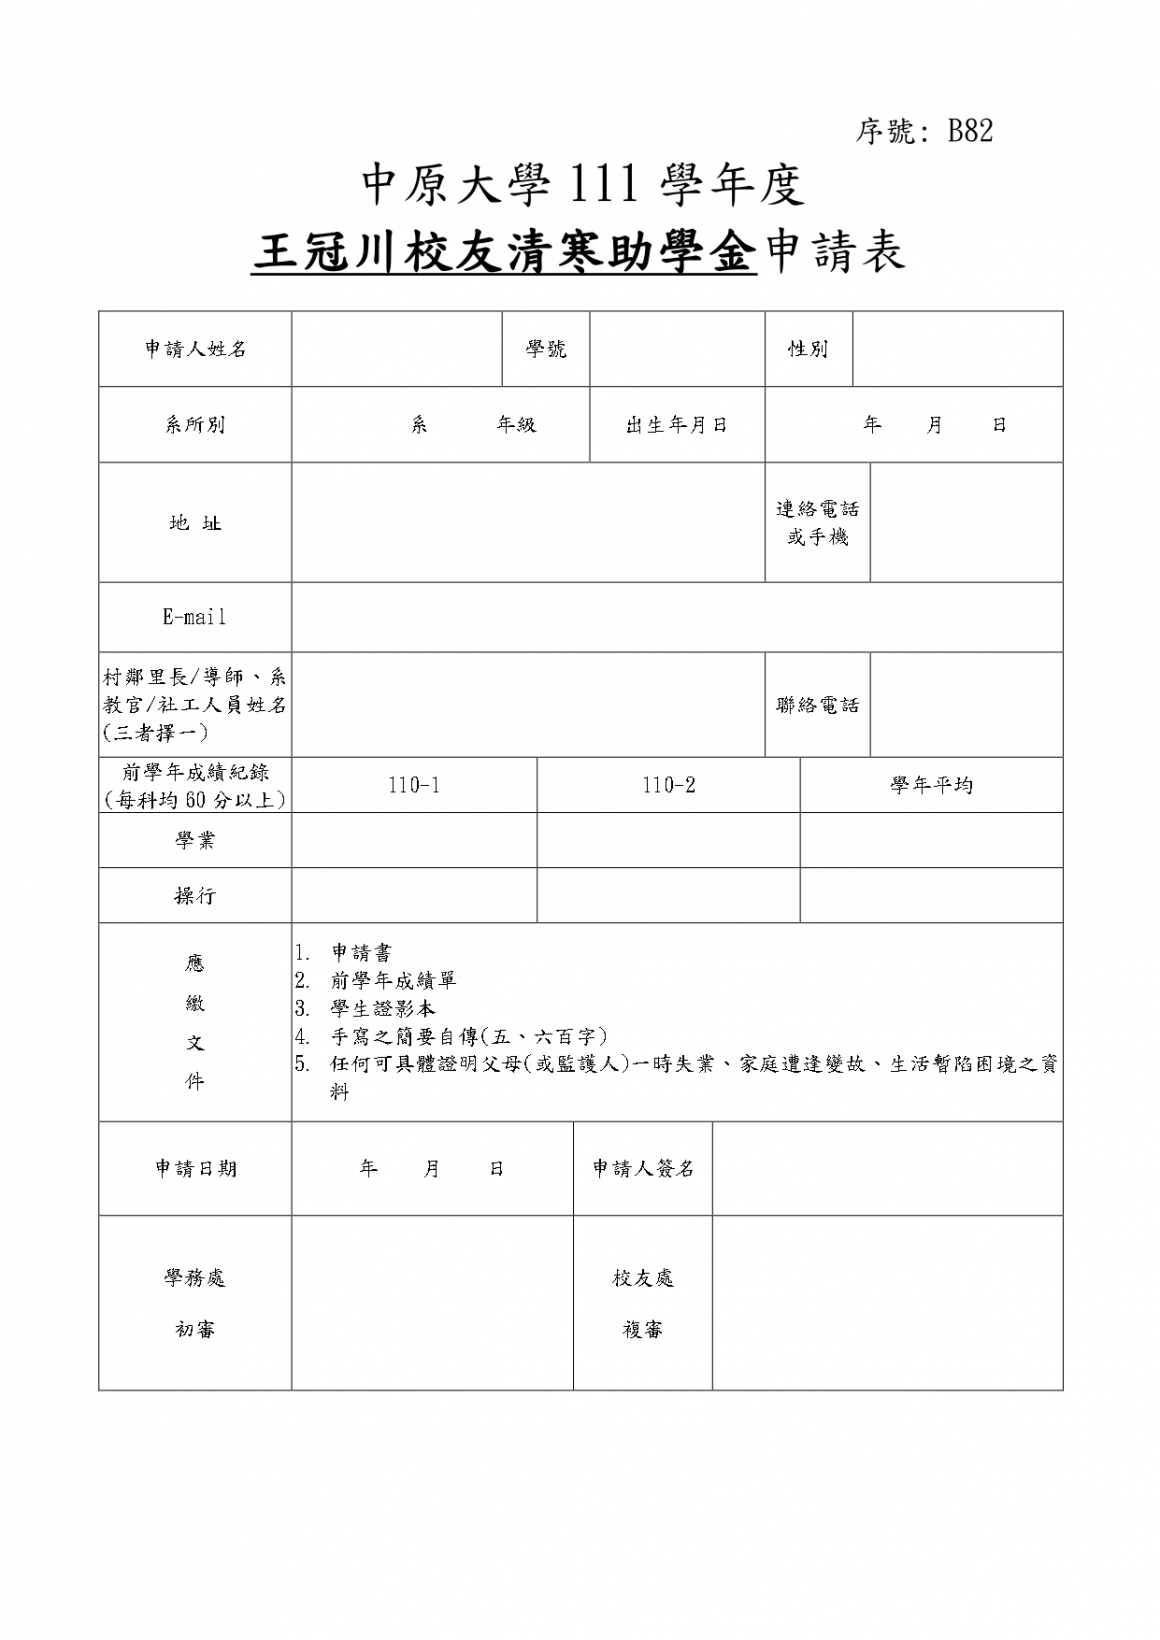 B82_王冠川校友基金會清寒助學金辦法及申請表_page-0002